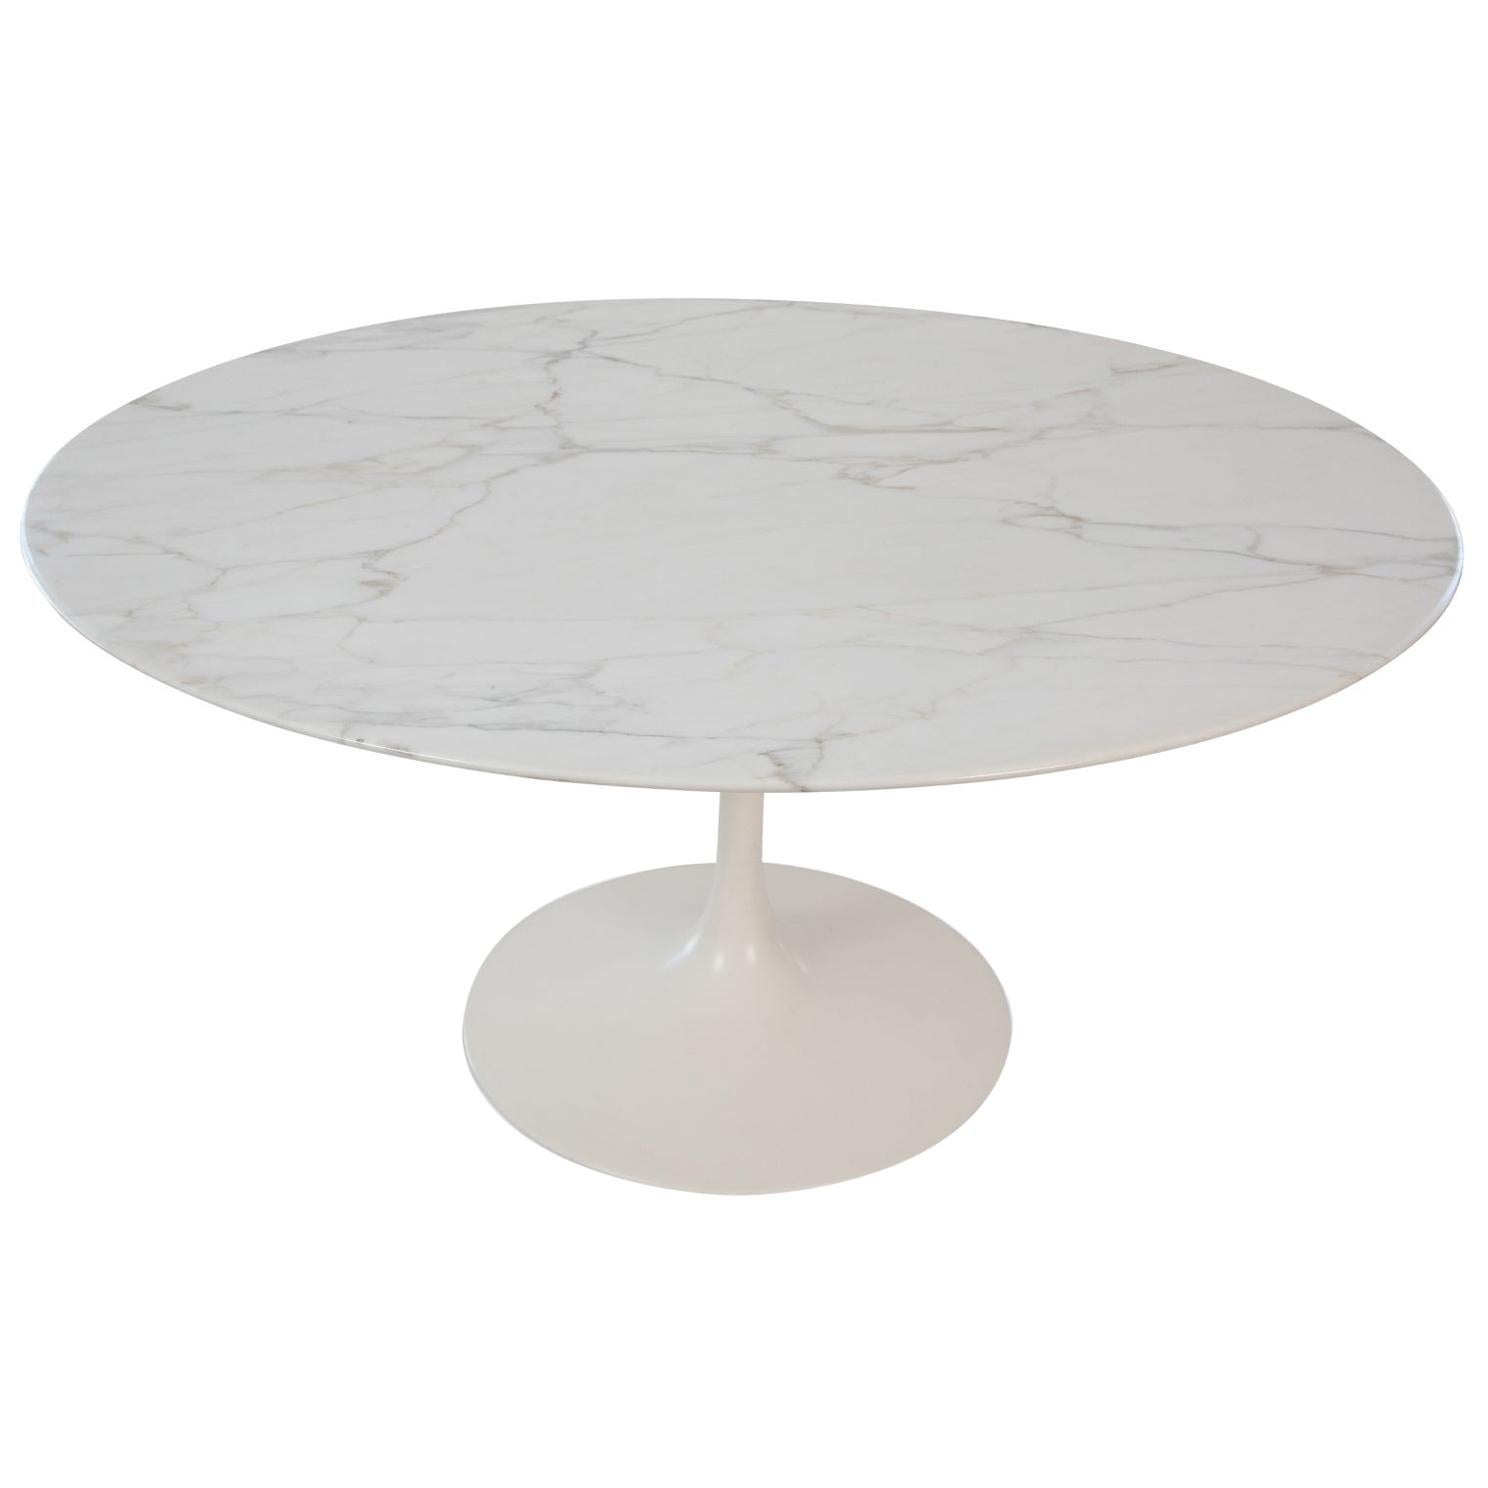 Eero Saarinen Knoll Calacatta Marble Dining Table